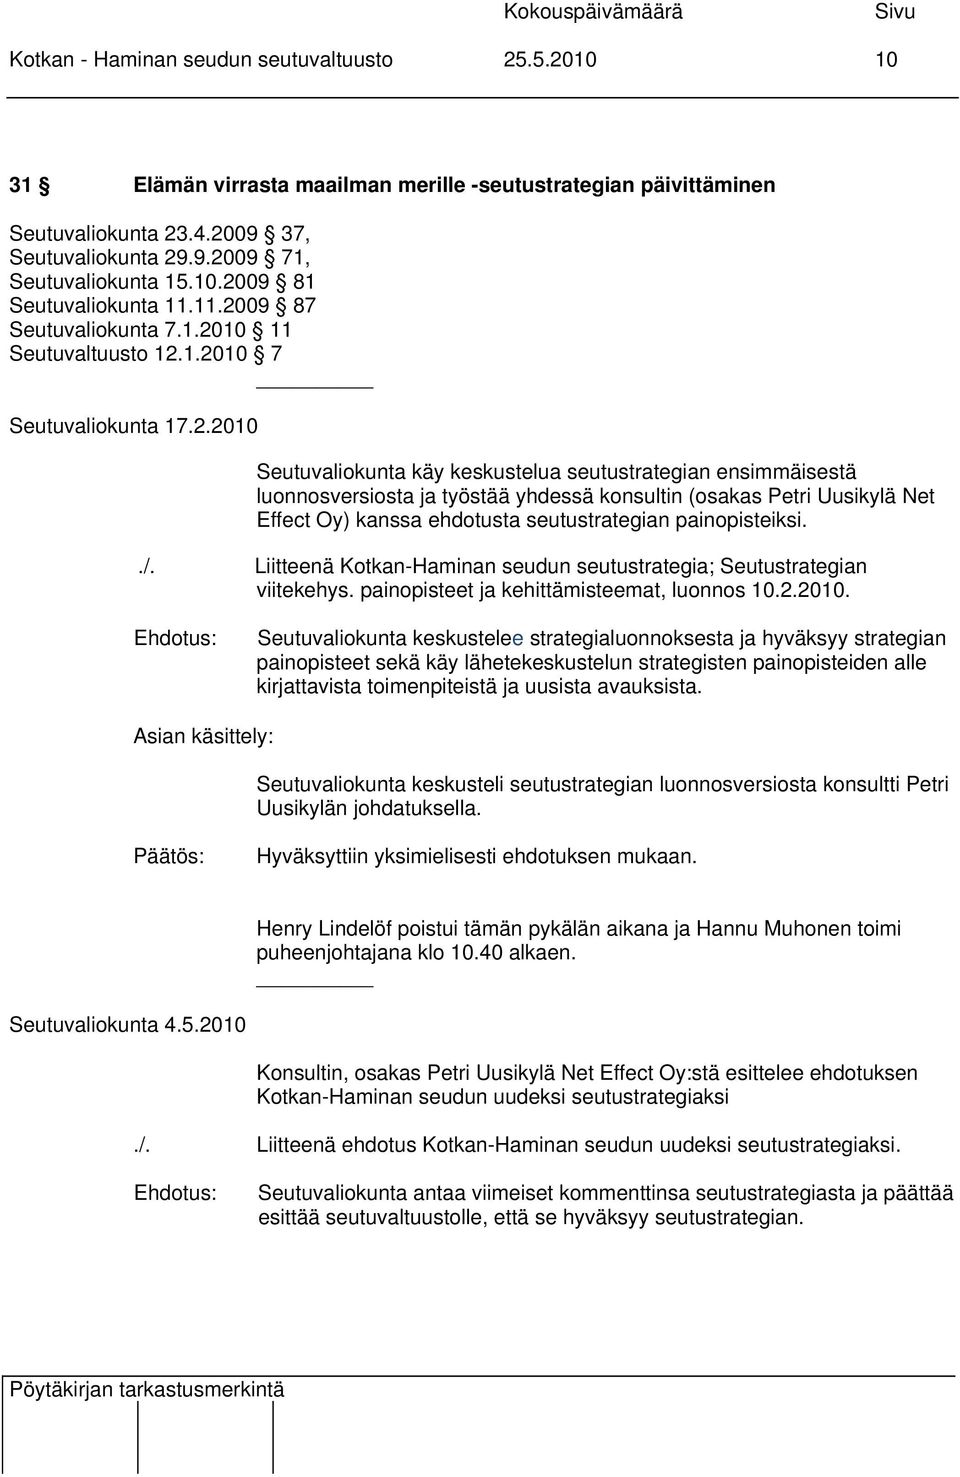 luonnosversiosta ja työstää yhdessä konsultin (osakas Petri Uusikylä Net Effect Oy) kanssa ehdotusta seutustrategian painopisteiksi../.